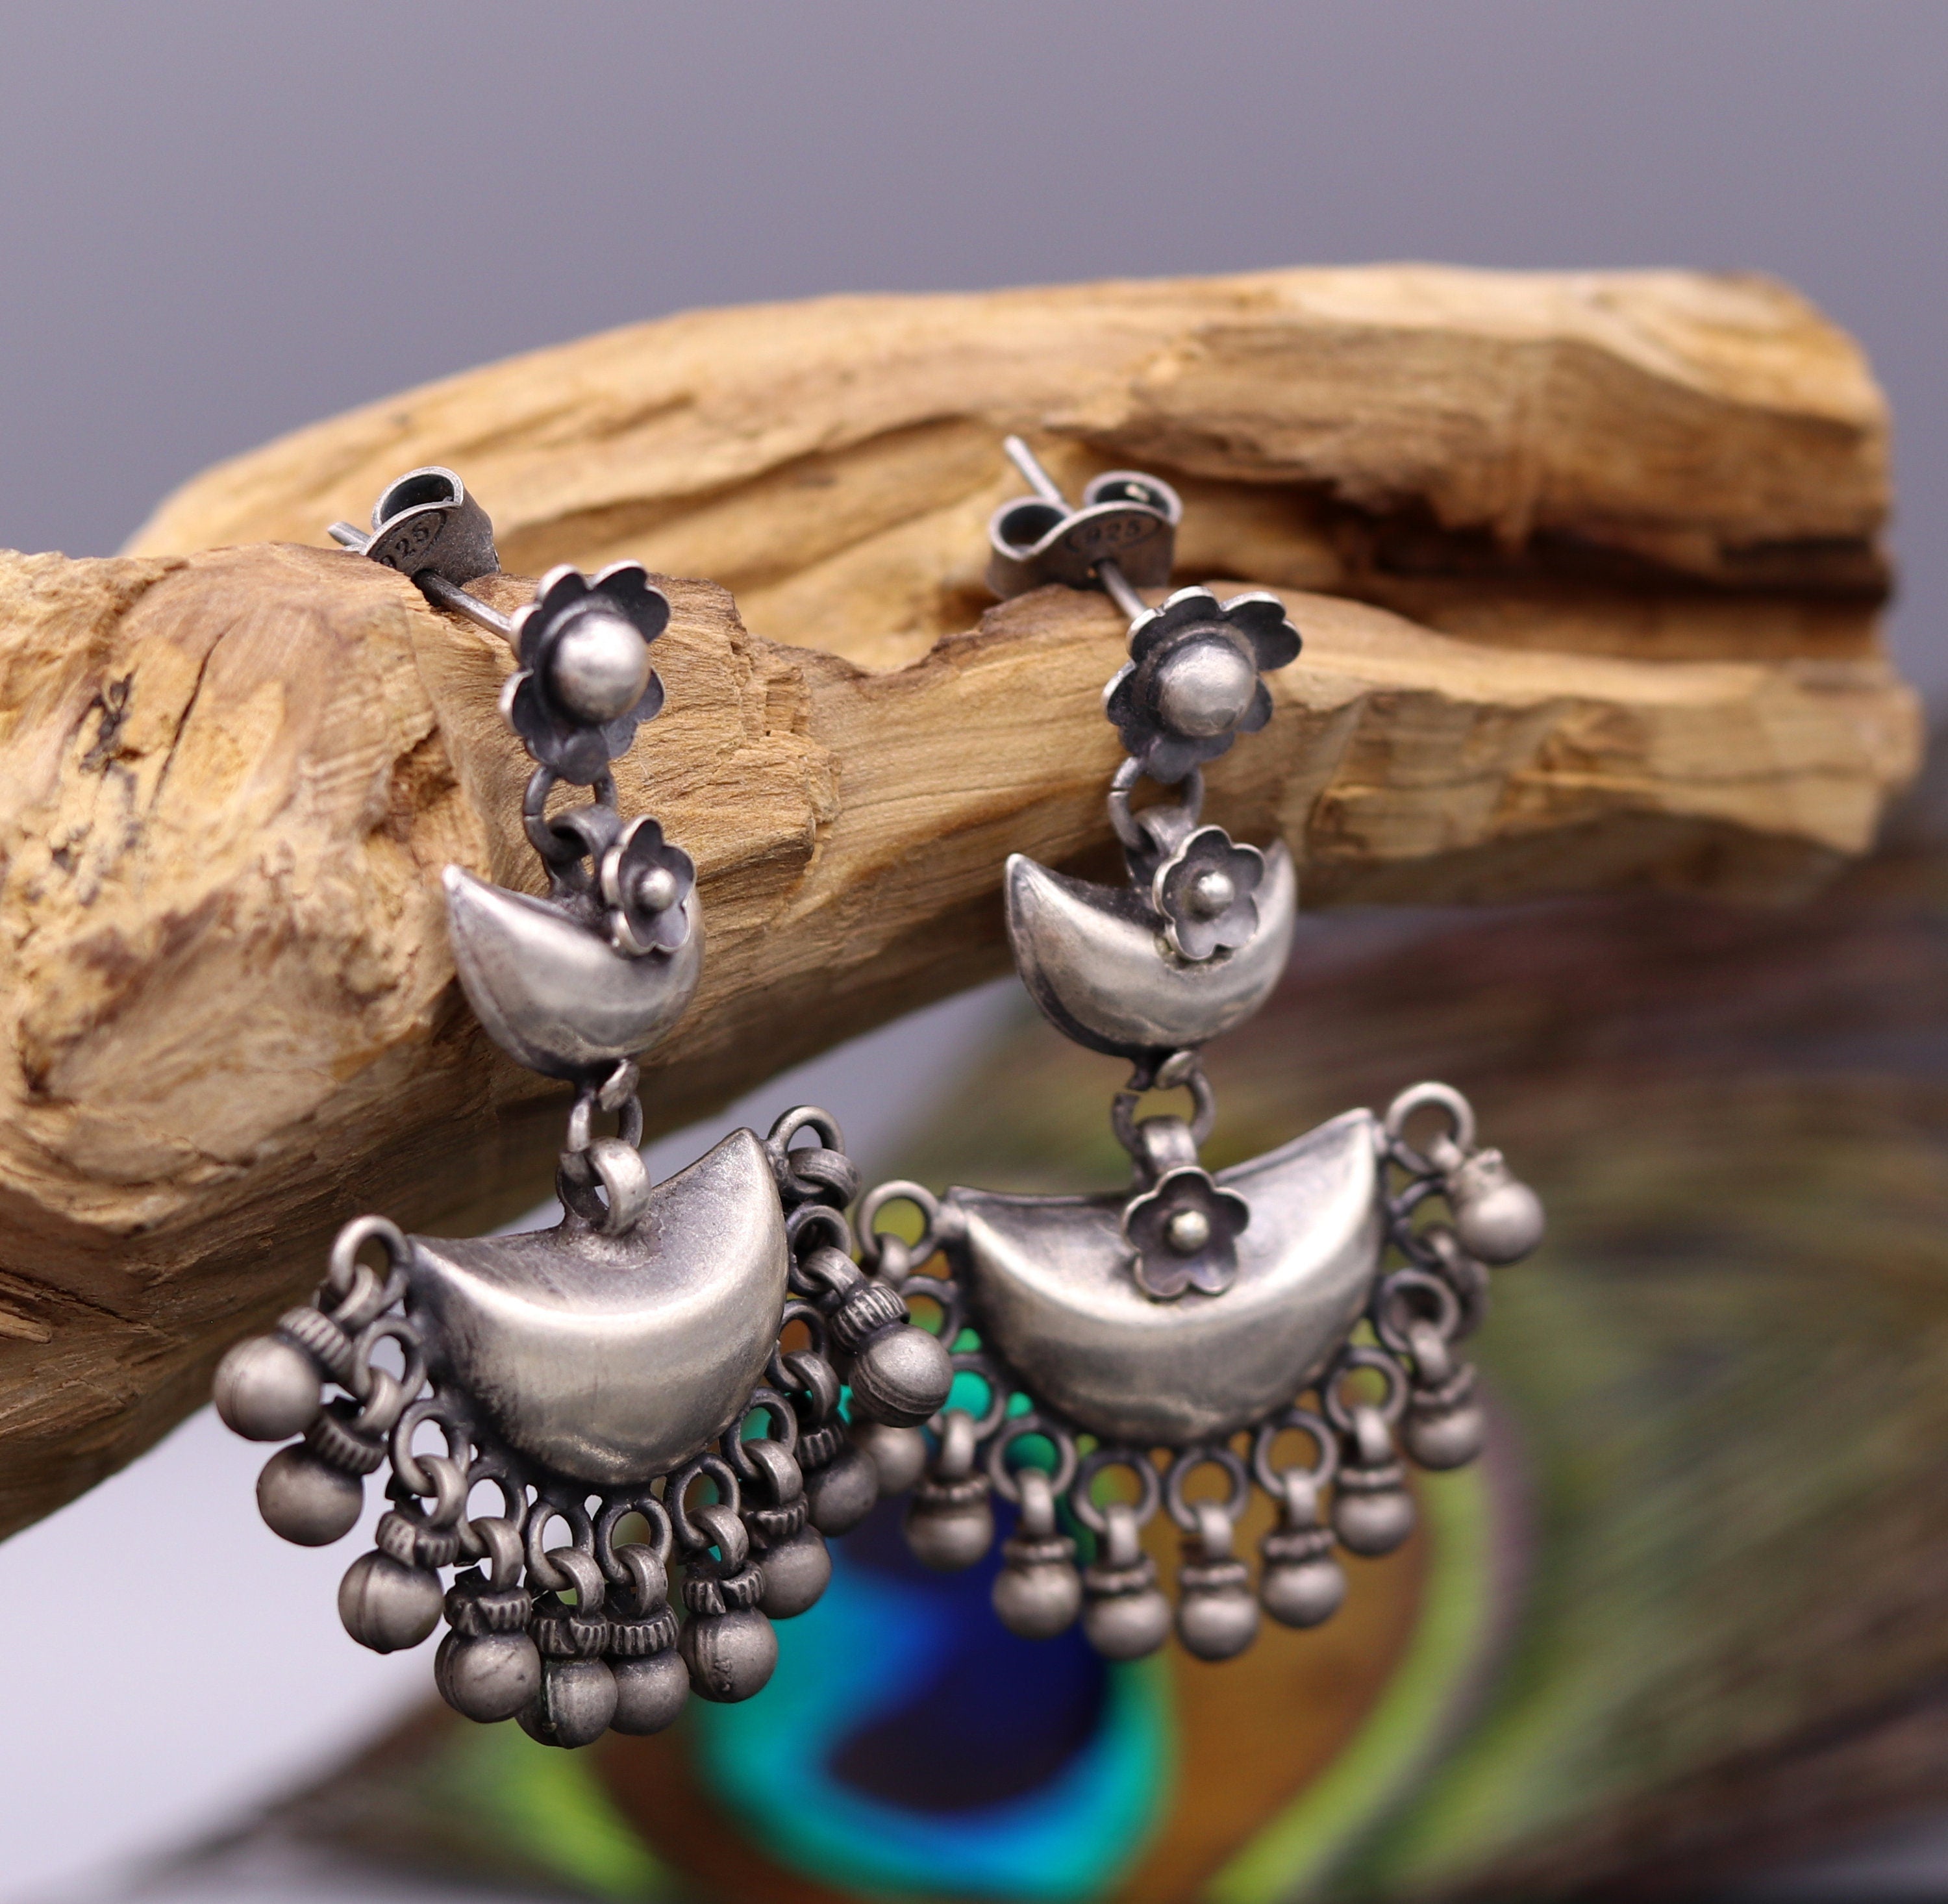 Double Stud Earrings Chain | Chain Stud Earrings Women | Womens Double Silver  Earrings - Stud Earrings - Aliexpress